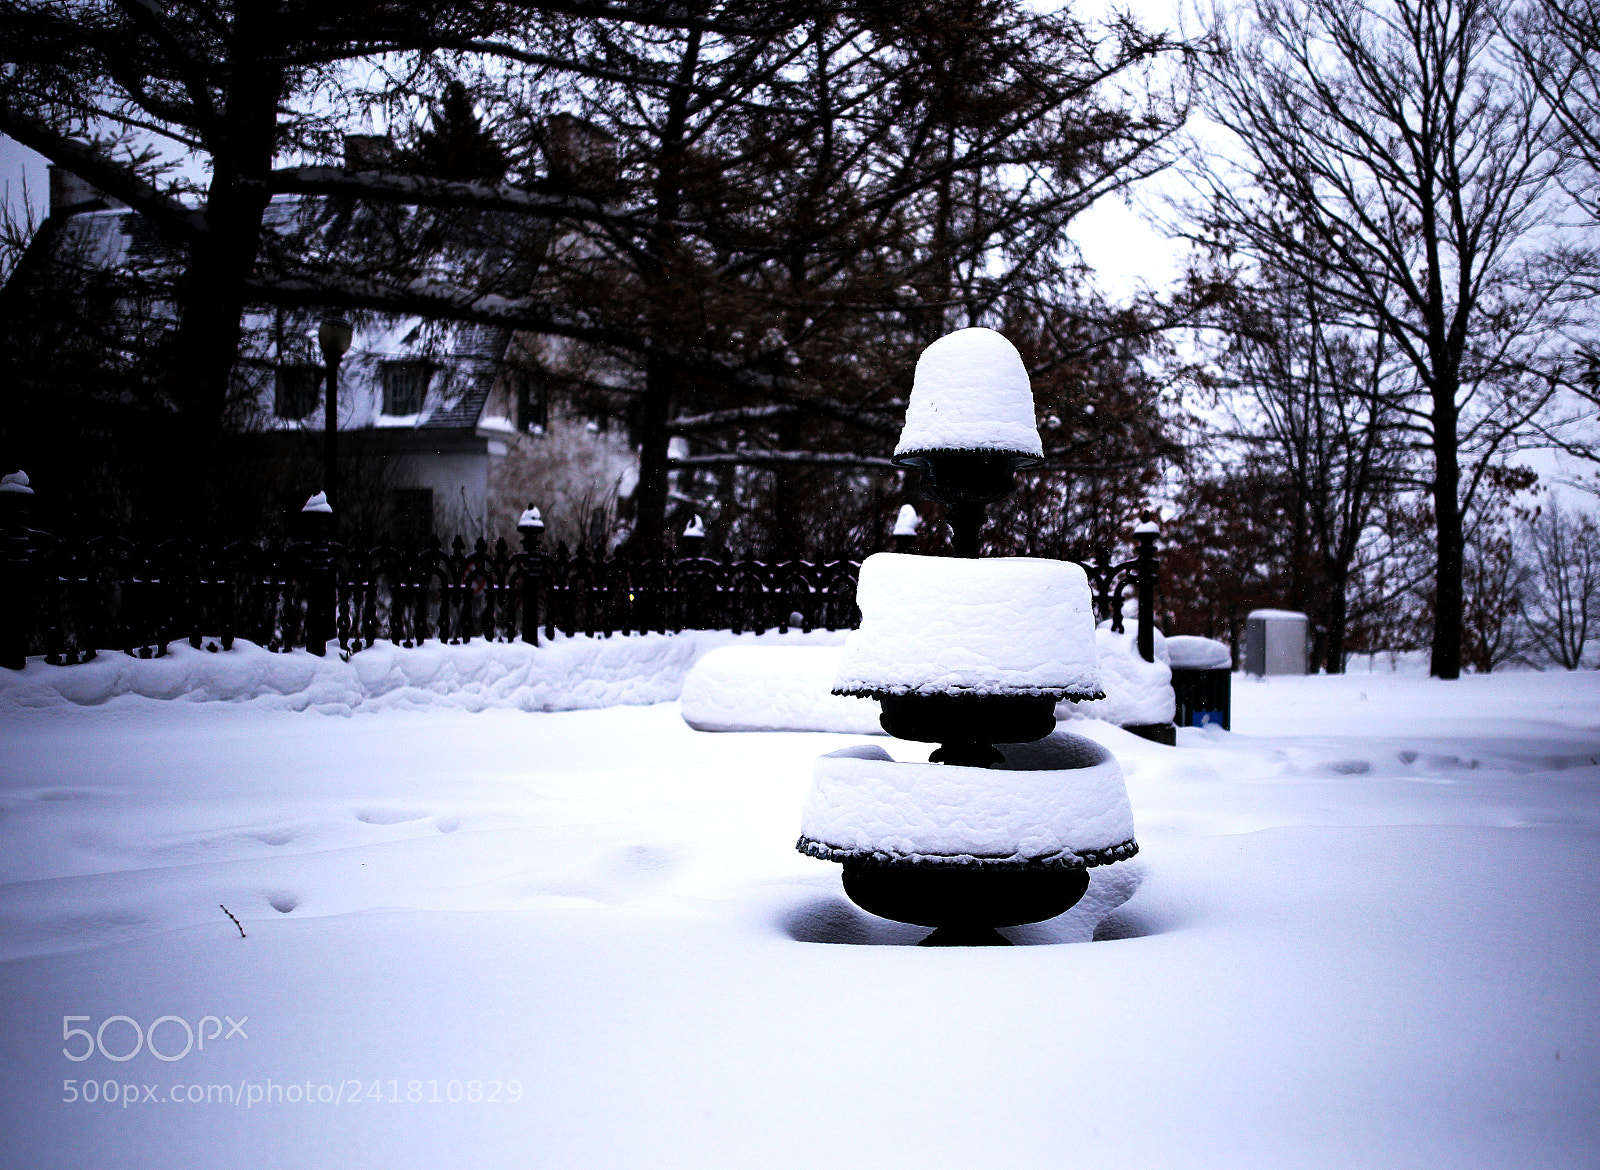 Canon EOS 6D sample photo. Fontaine de neige photography